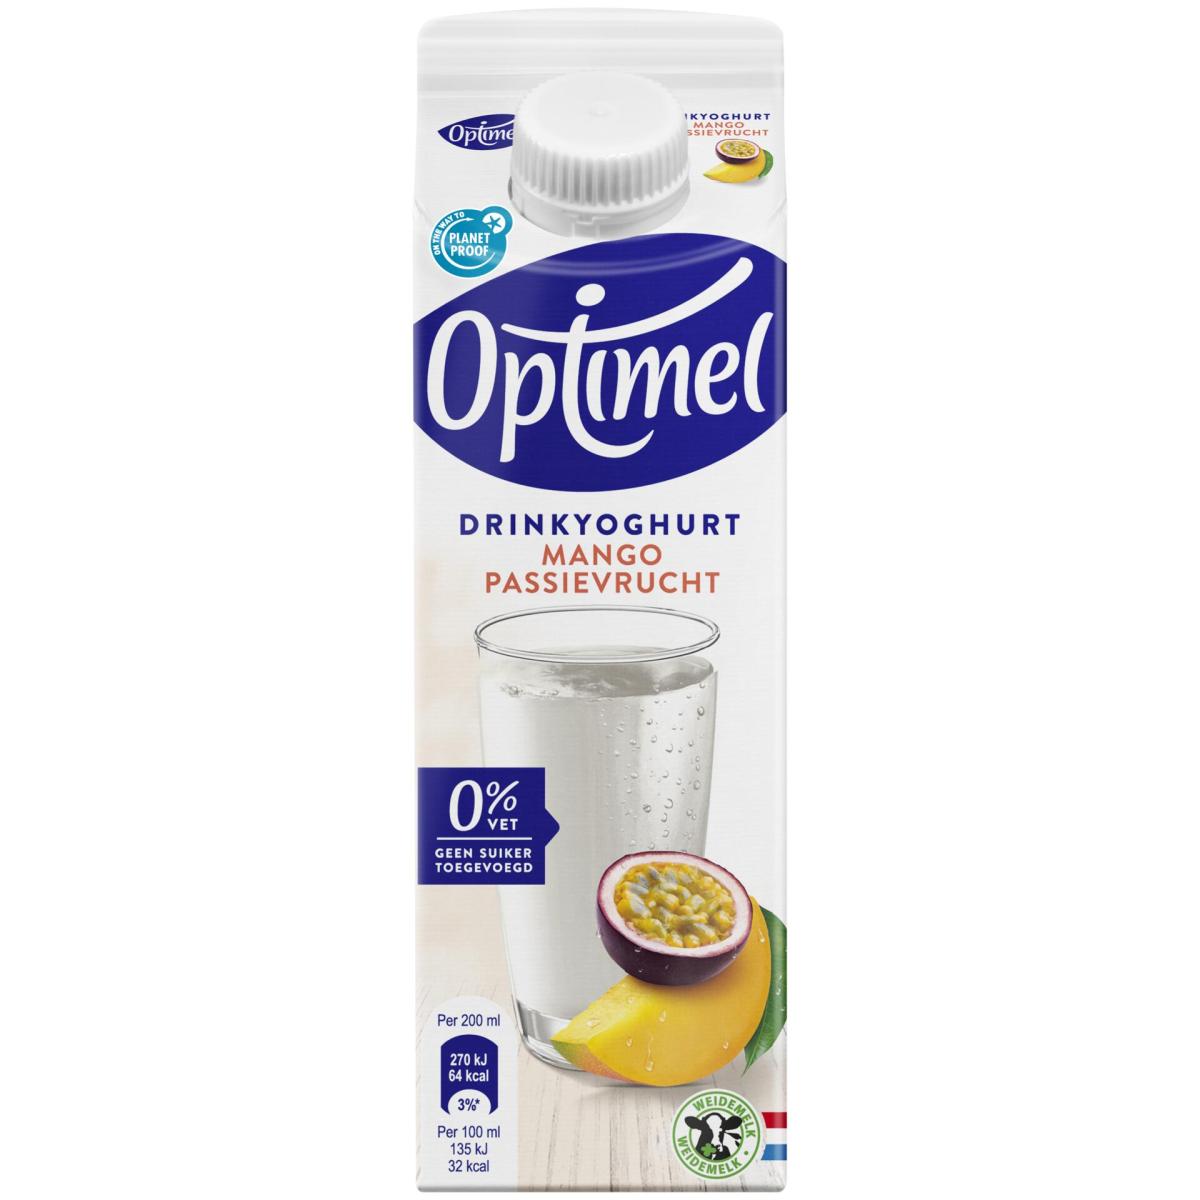 Optimel Drinkyoghurt mango passievrucht 0% vet 1L